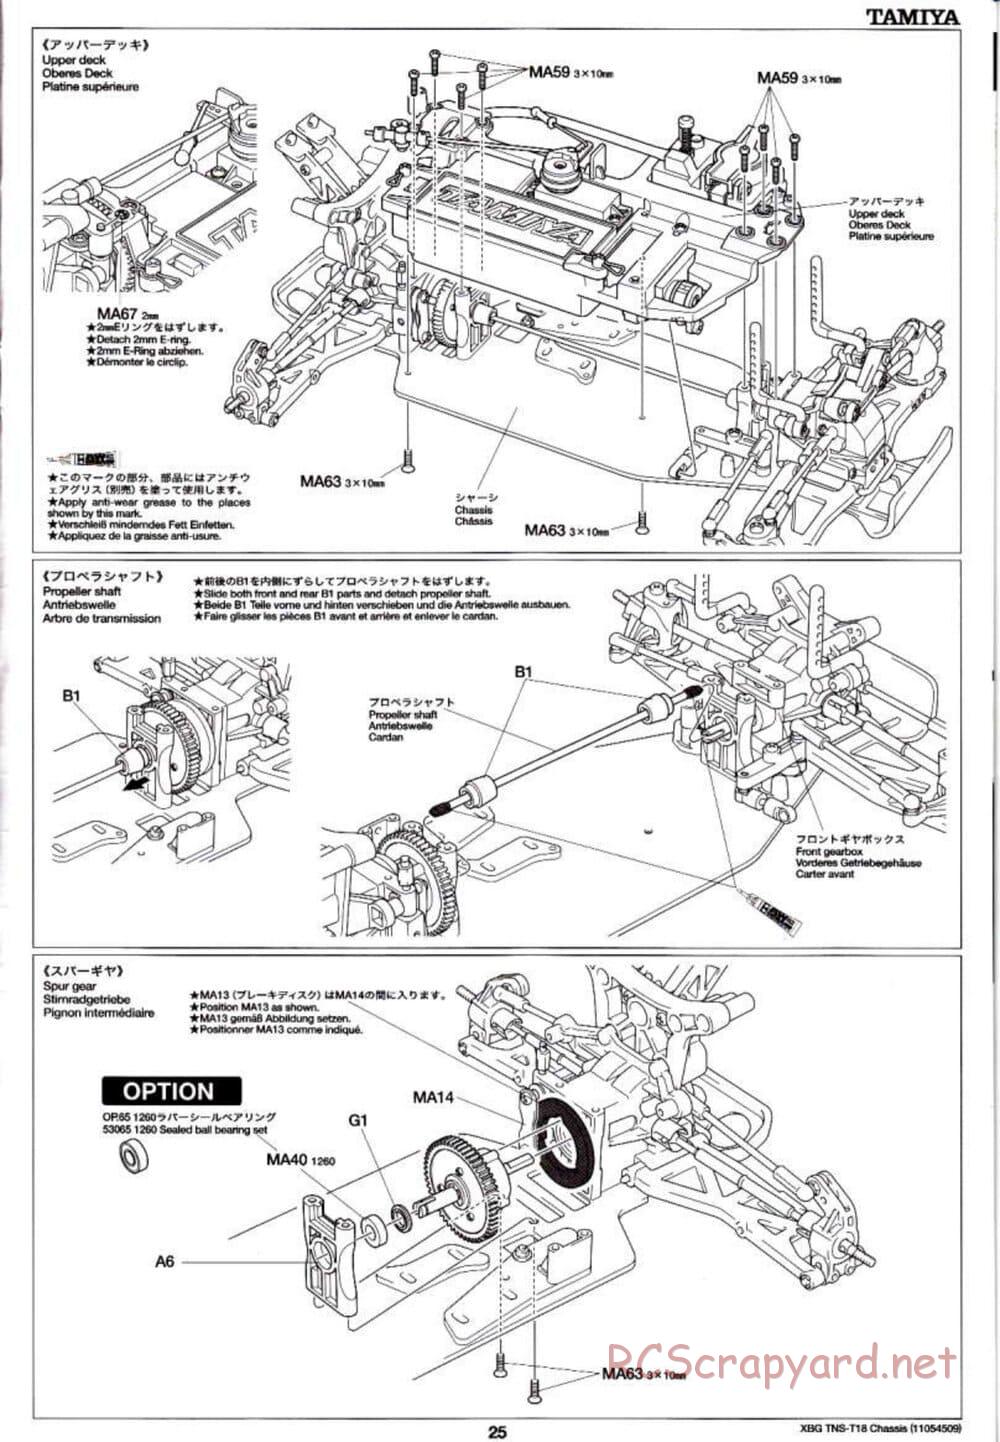 Tamiya - TNS-T18 Chassis - Manual - Page 25